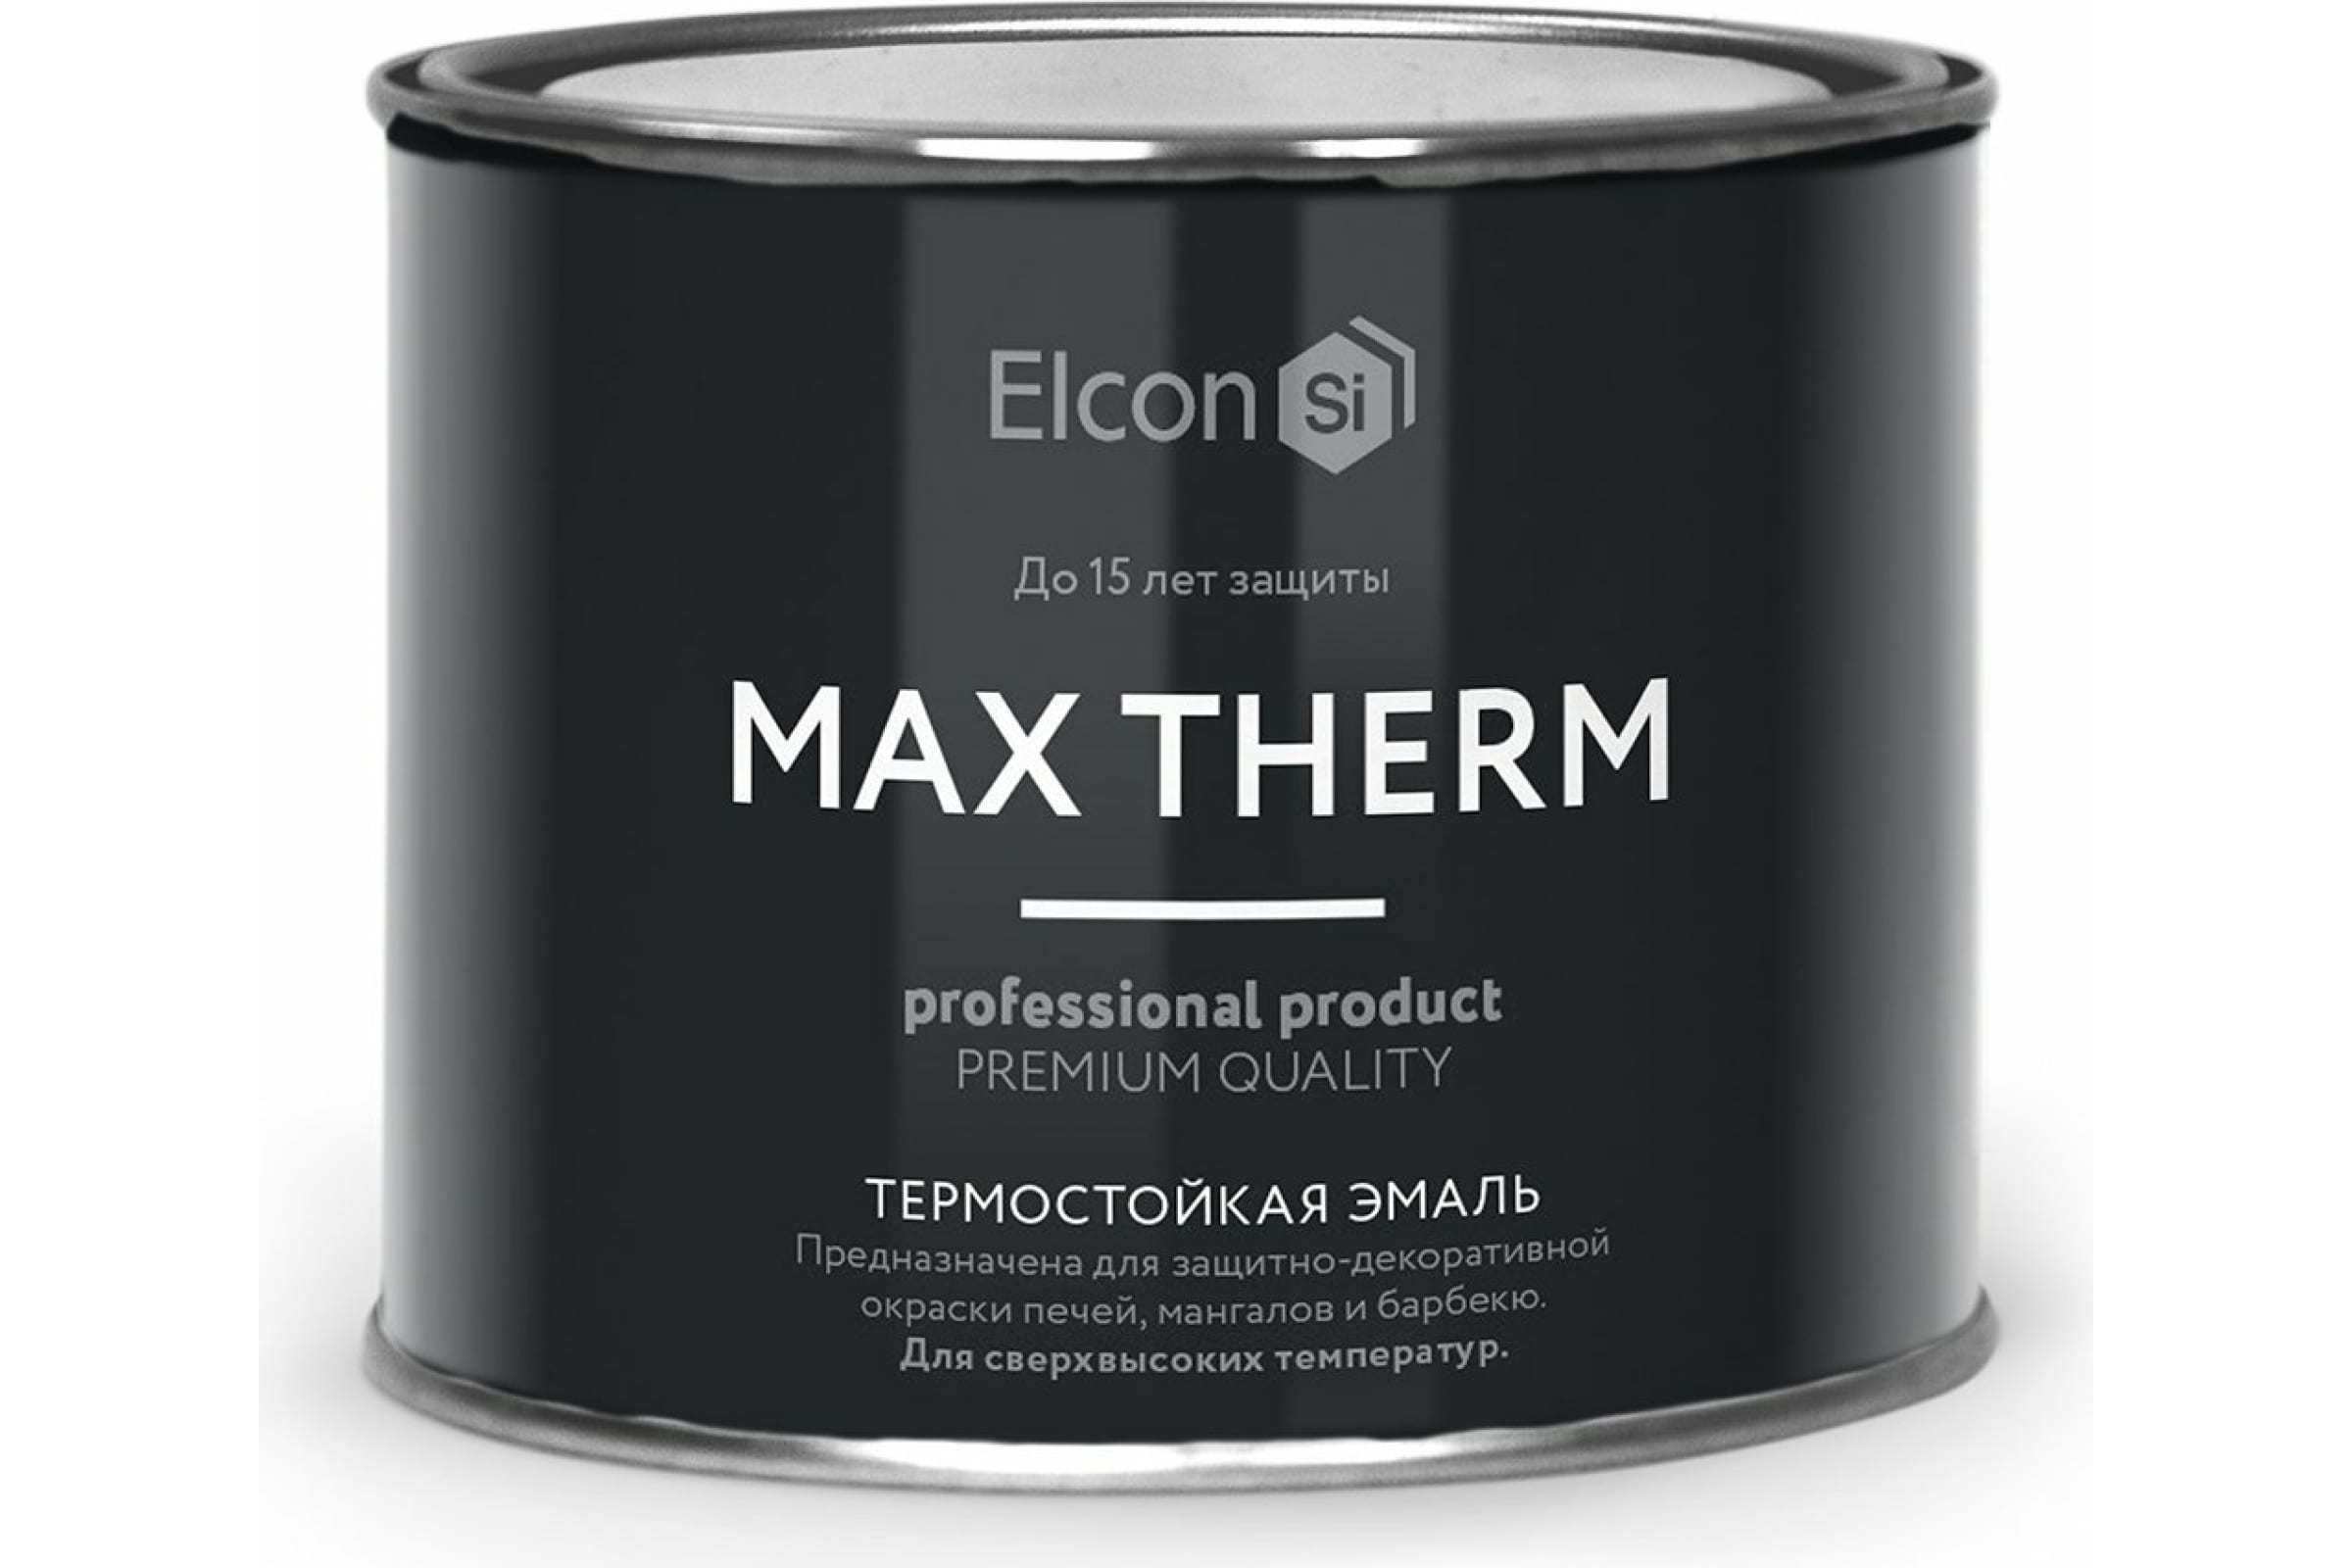 Термостойкая антикоррозионная эмаль Elcon Max Therm до 400 градусов, 0,4 л, синяя термостойкая антикоррозионная эмаль elcon max therm до 400 градусов 0 4 л коричневая